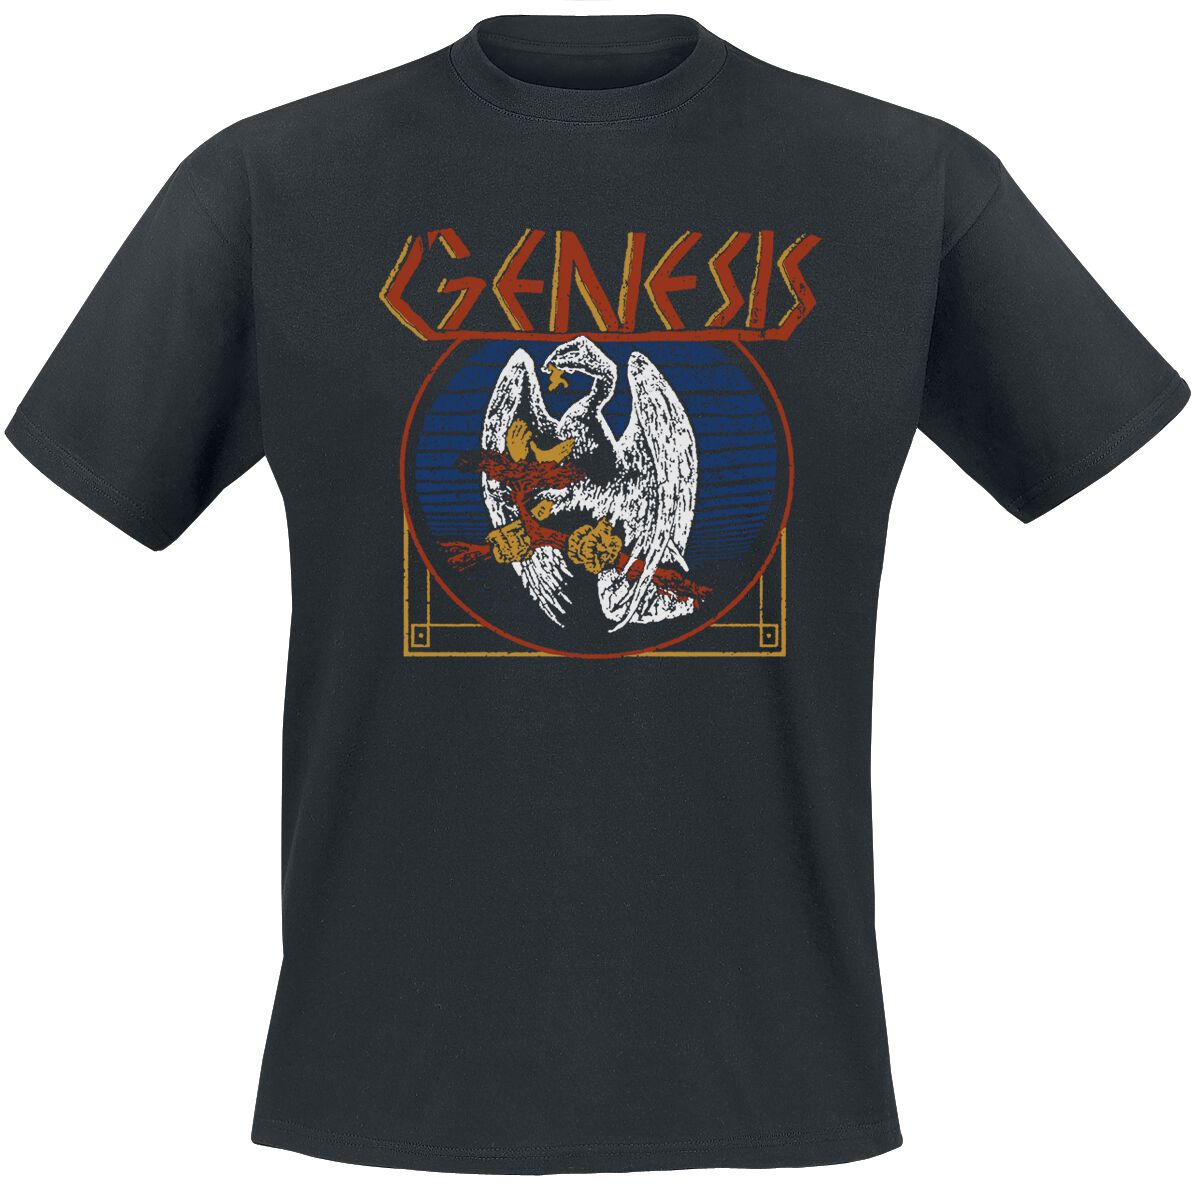 Genesis T-Shirt - Vulture - S bis XXL - für Männer - Größe S - schwarz  - EMP exklusives Merchandise!